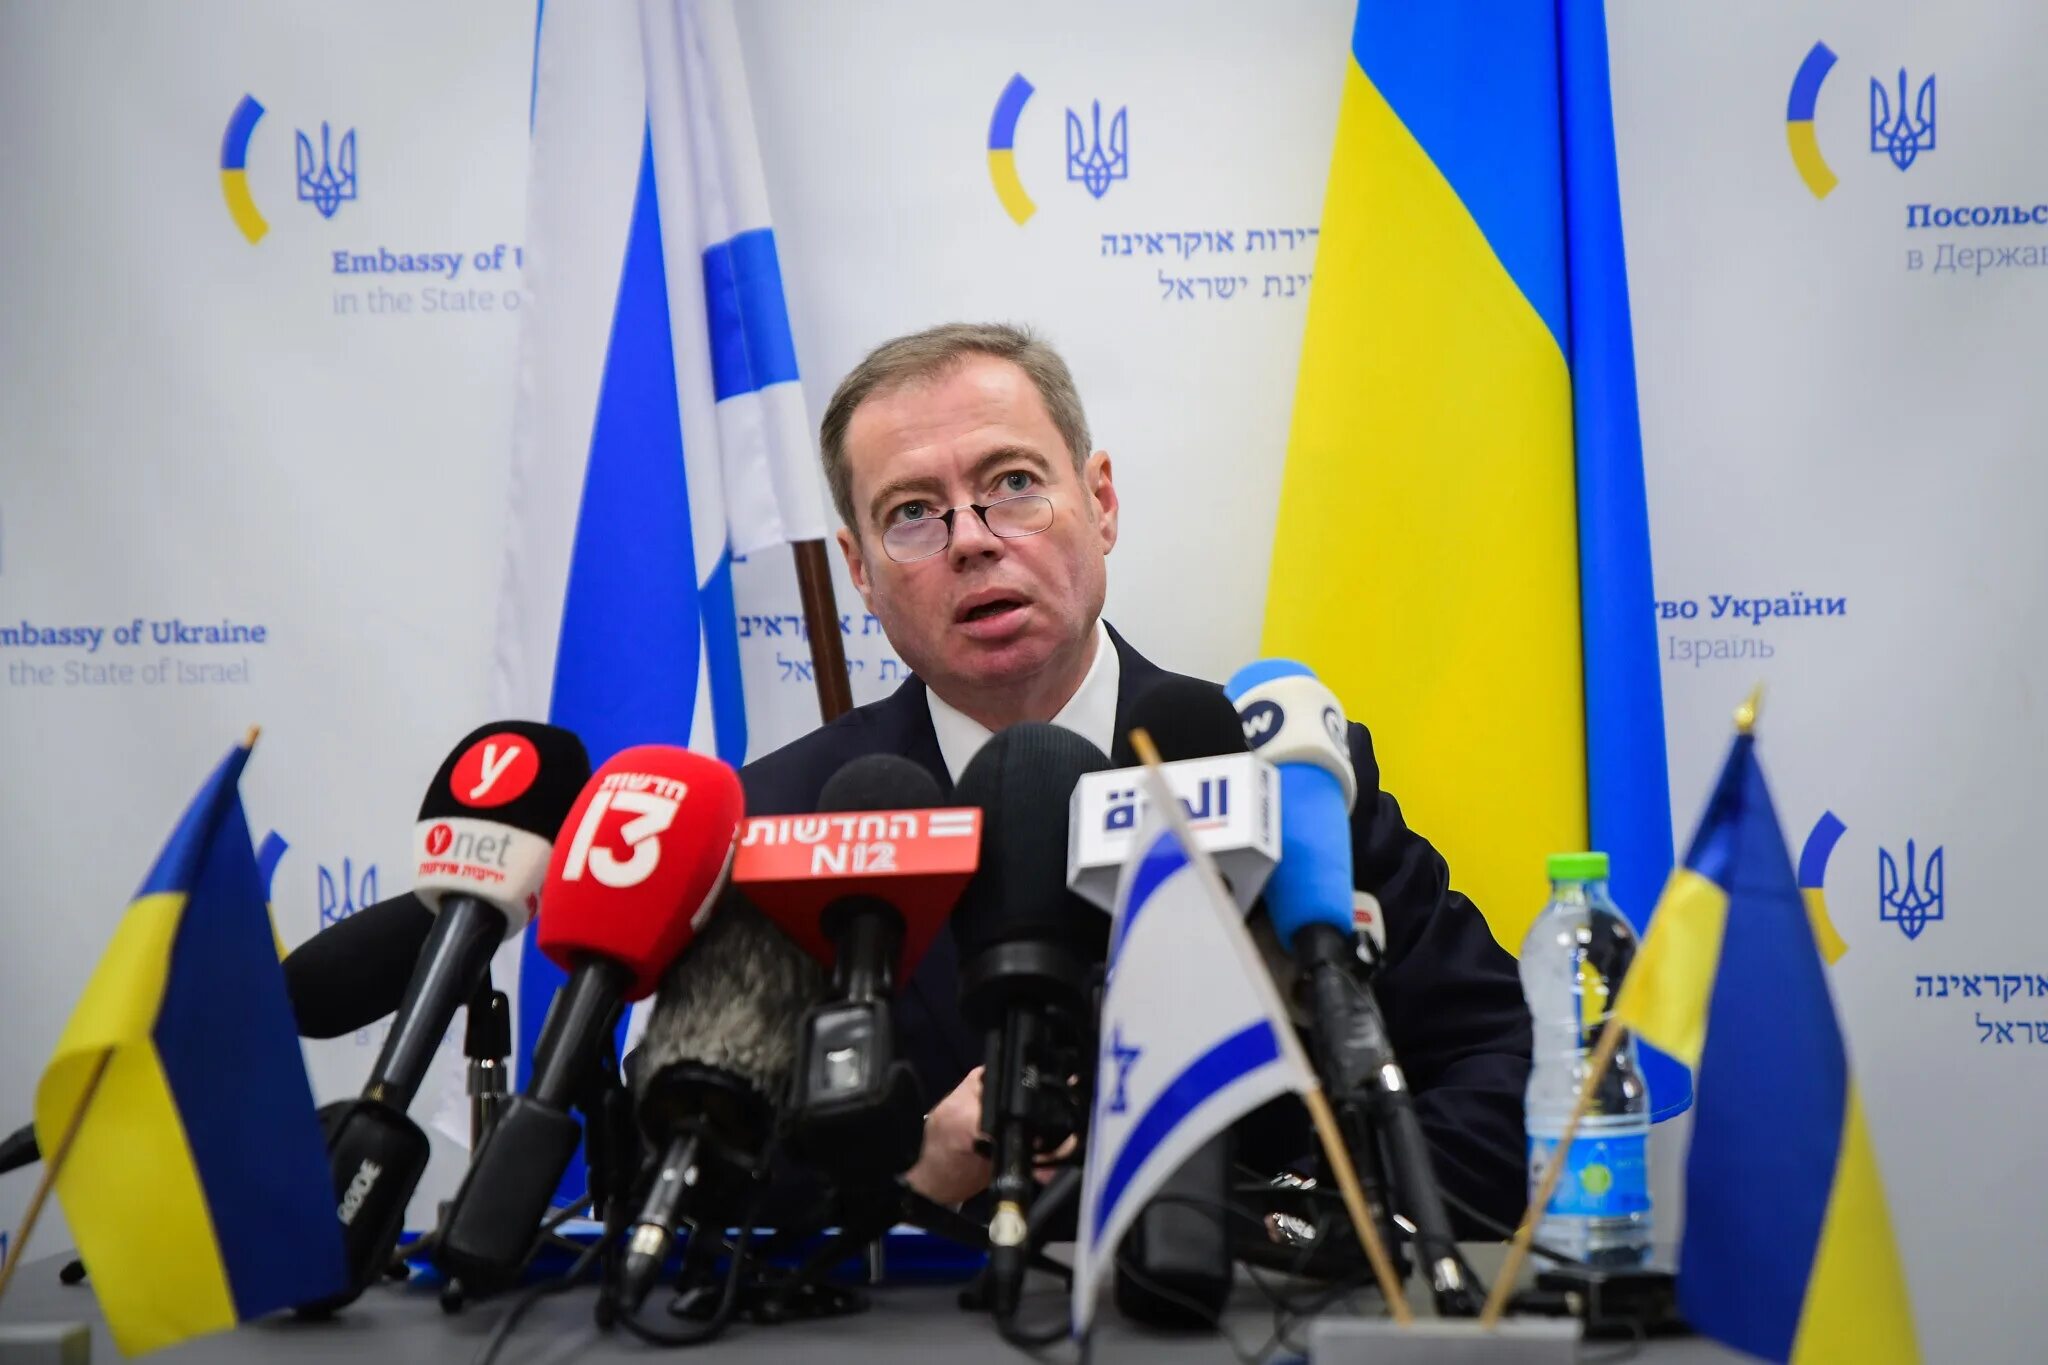 Корнийчук посол Украины в Израиле. Посол Израиля в Украине. Политики Украины. Украинская оппозиция.